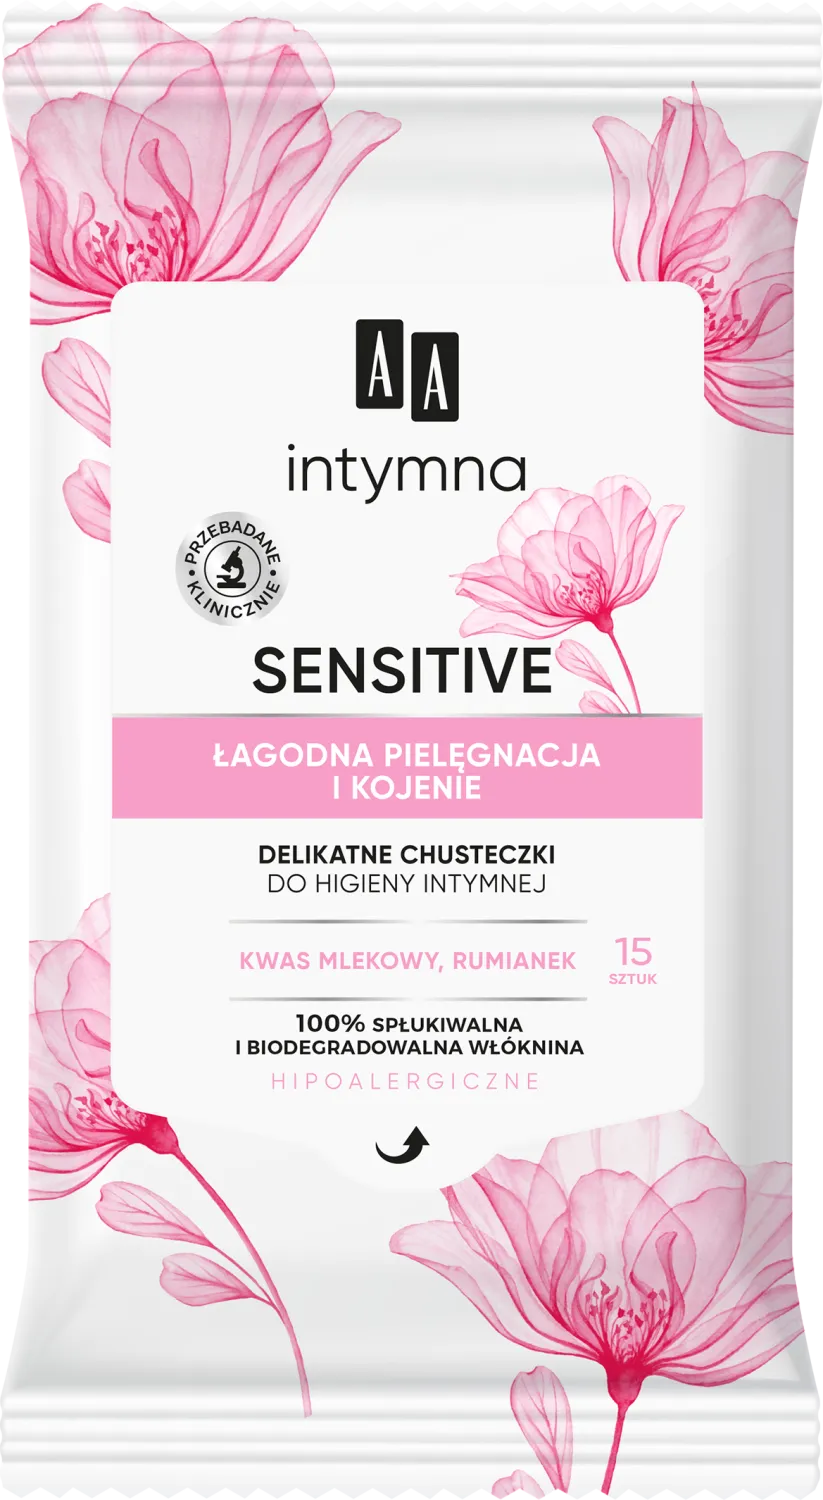 AA Intymna Sensitive chusteczki do higieny intymnej, 15szt